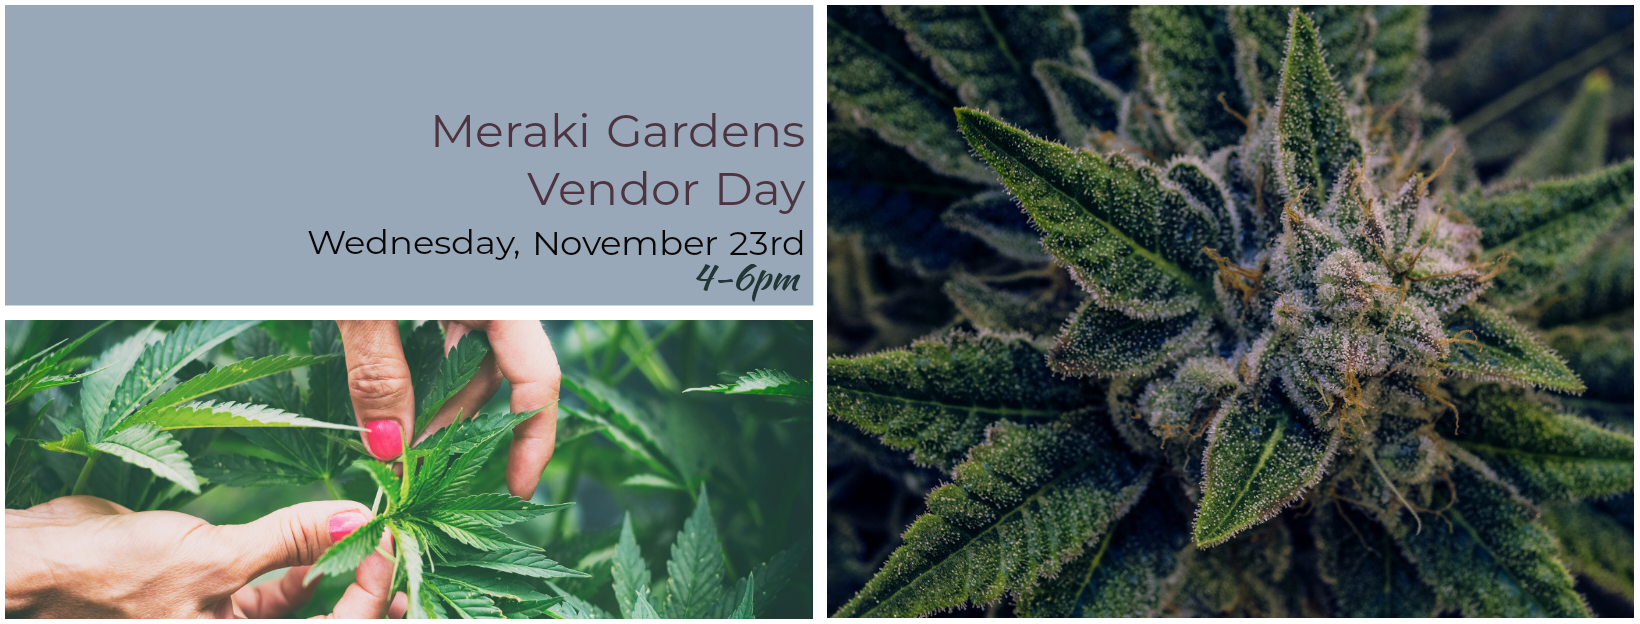 Meraki Gardens Vendor Day at Home Grown Apothecary